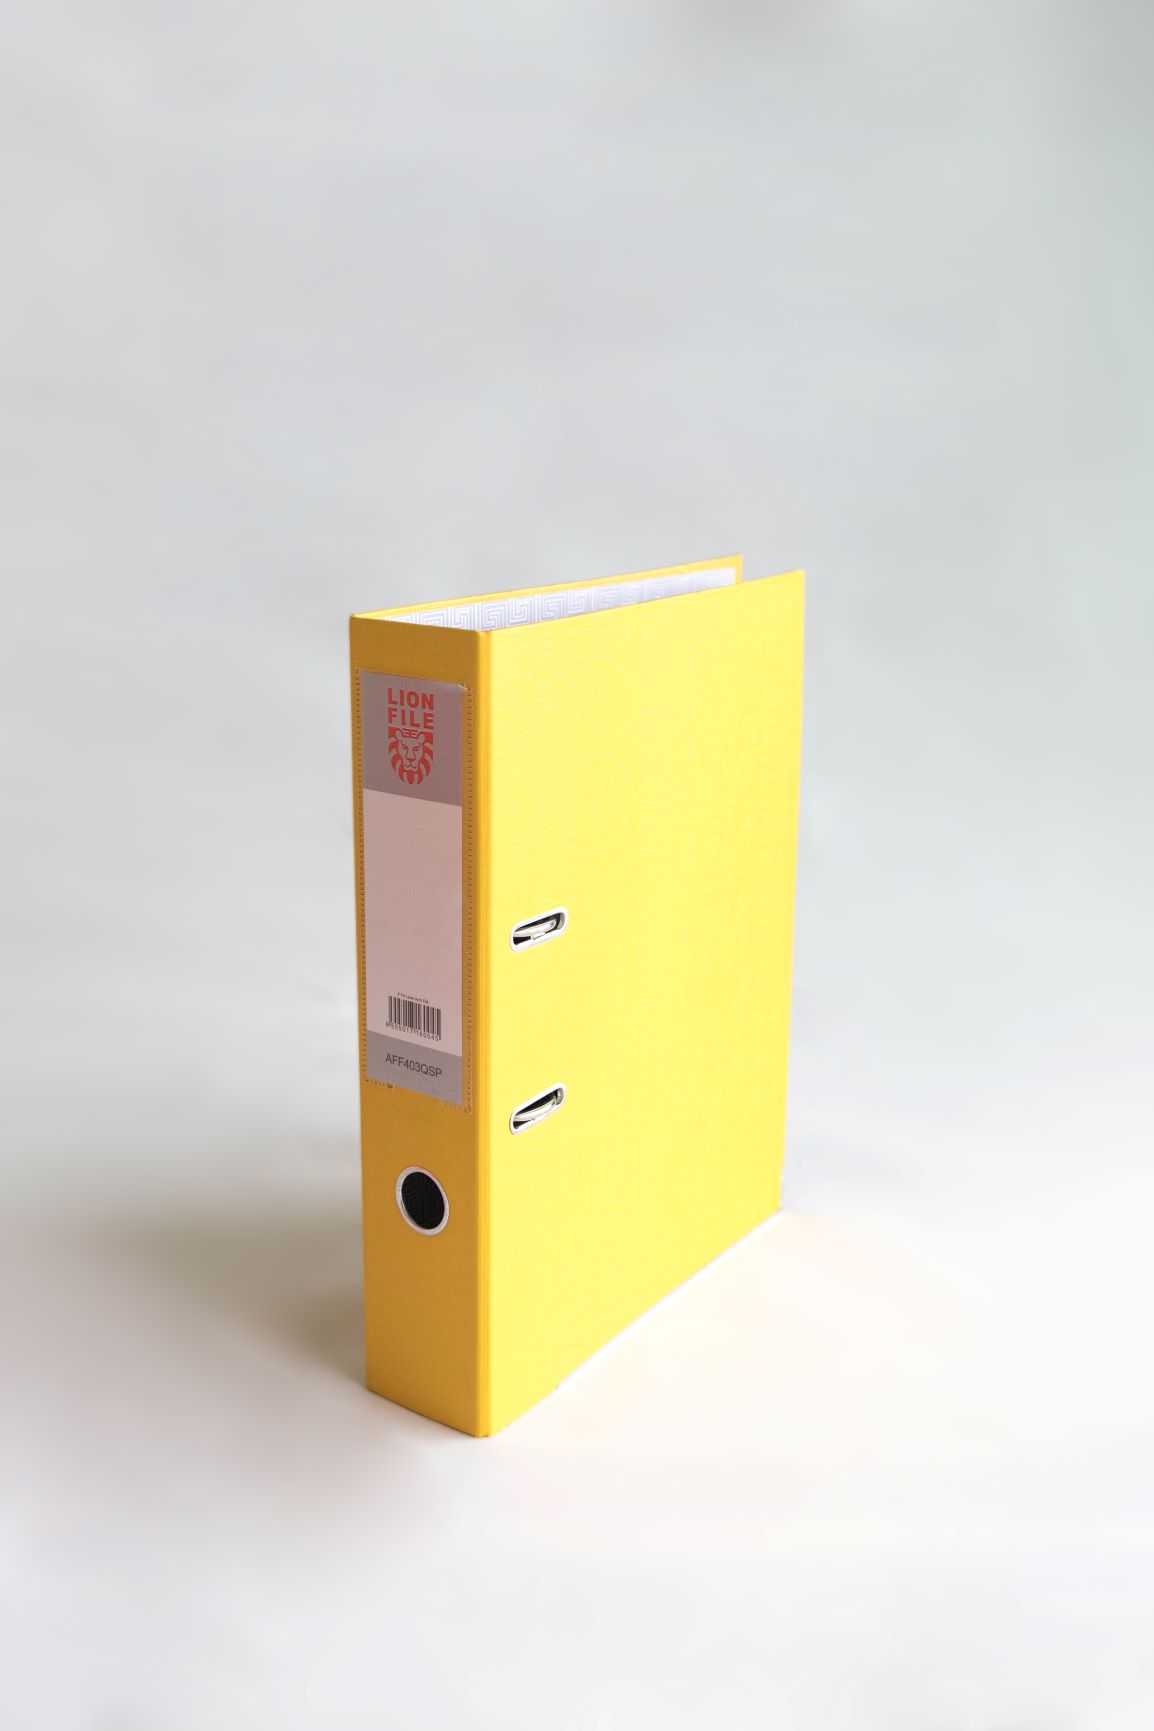 Premium Yellow Color Lion File Lever Arch File F4 - 3" (30 Units Per Carton)